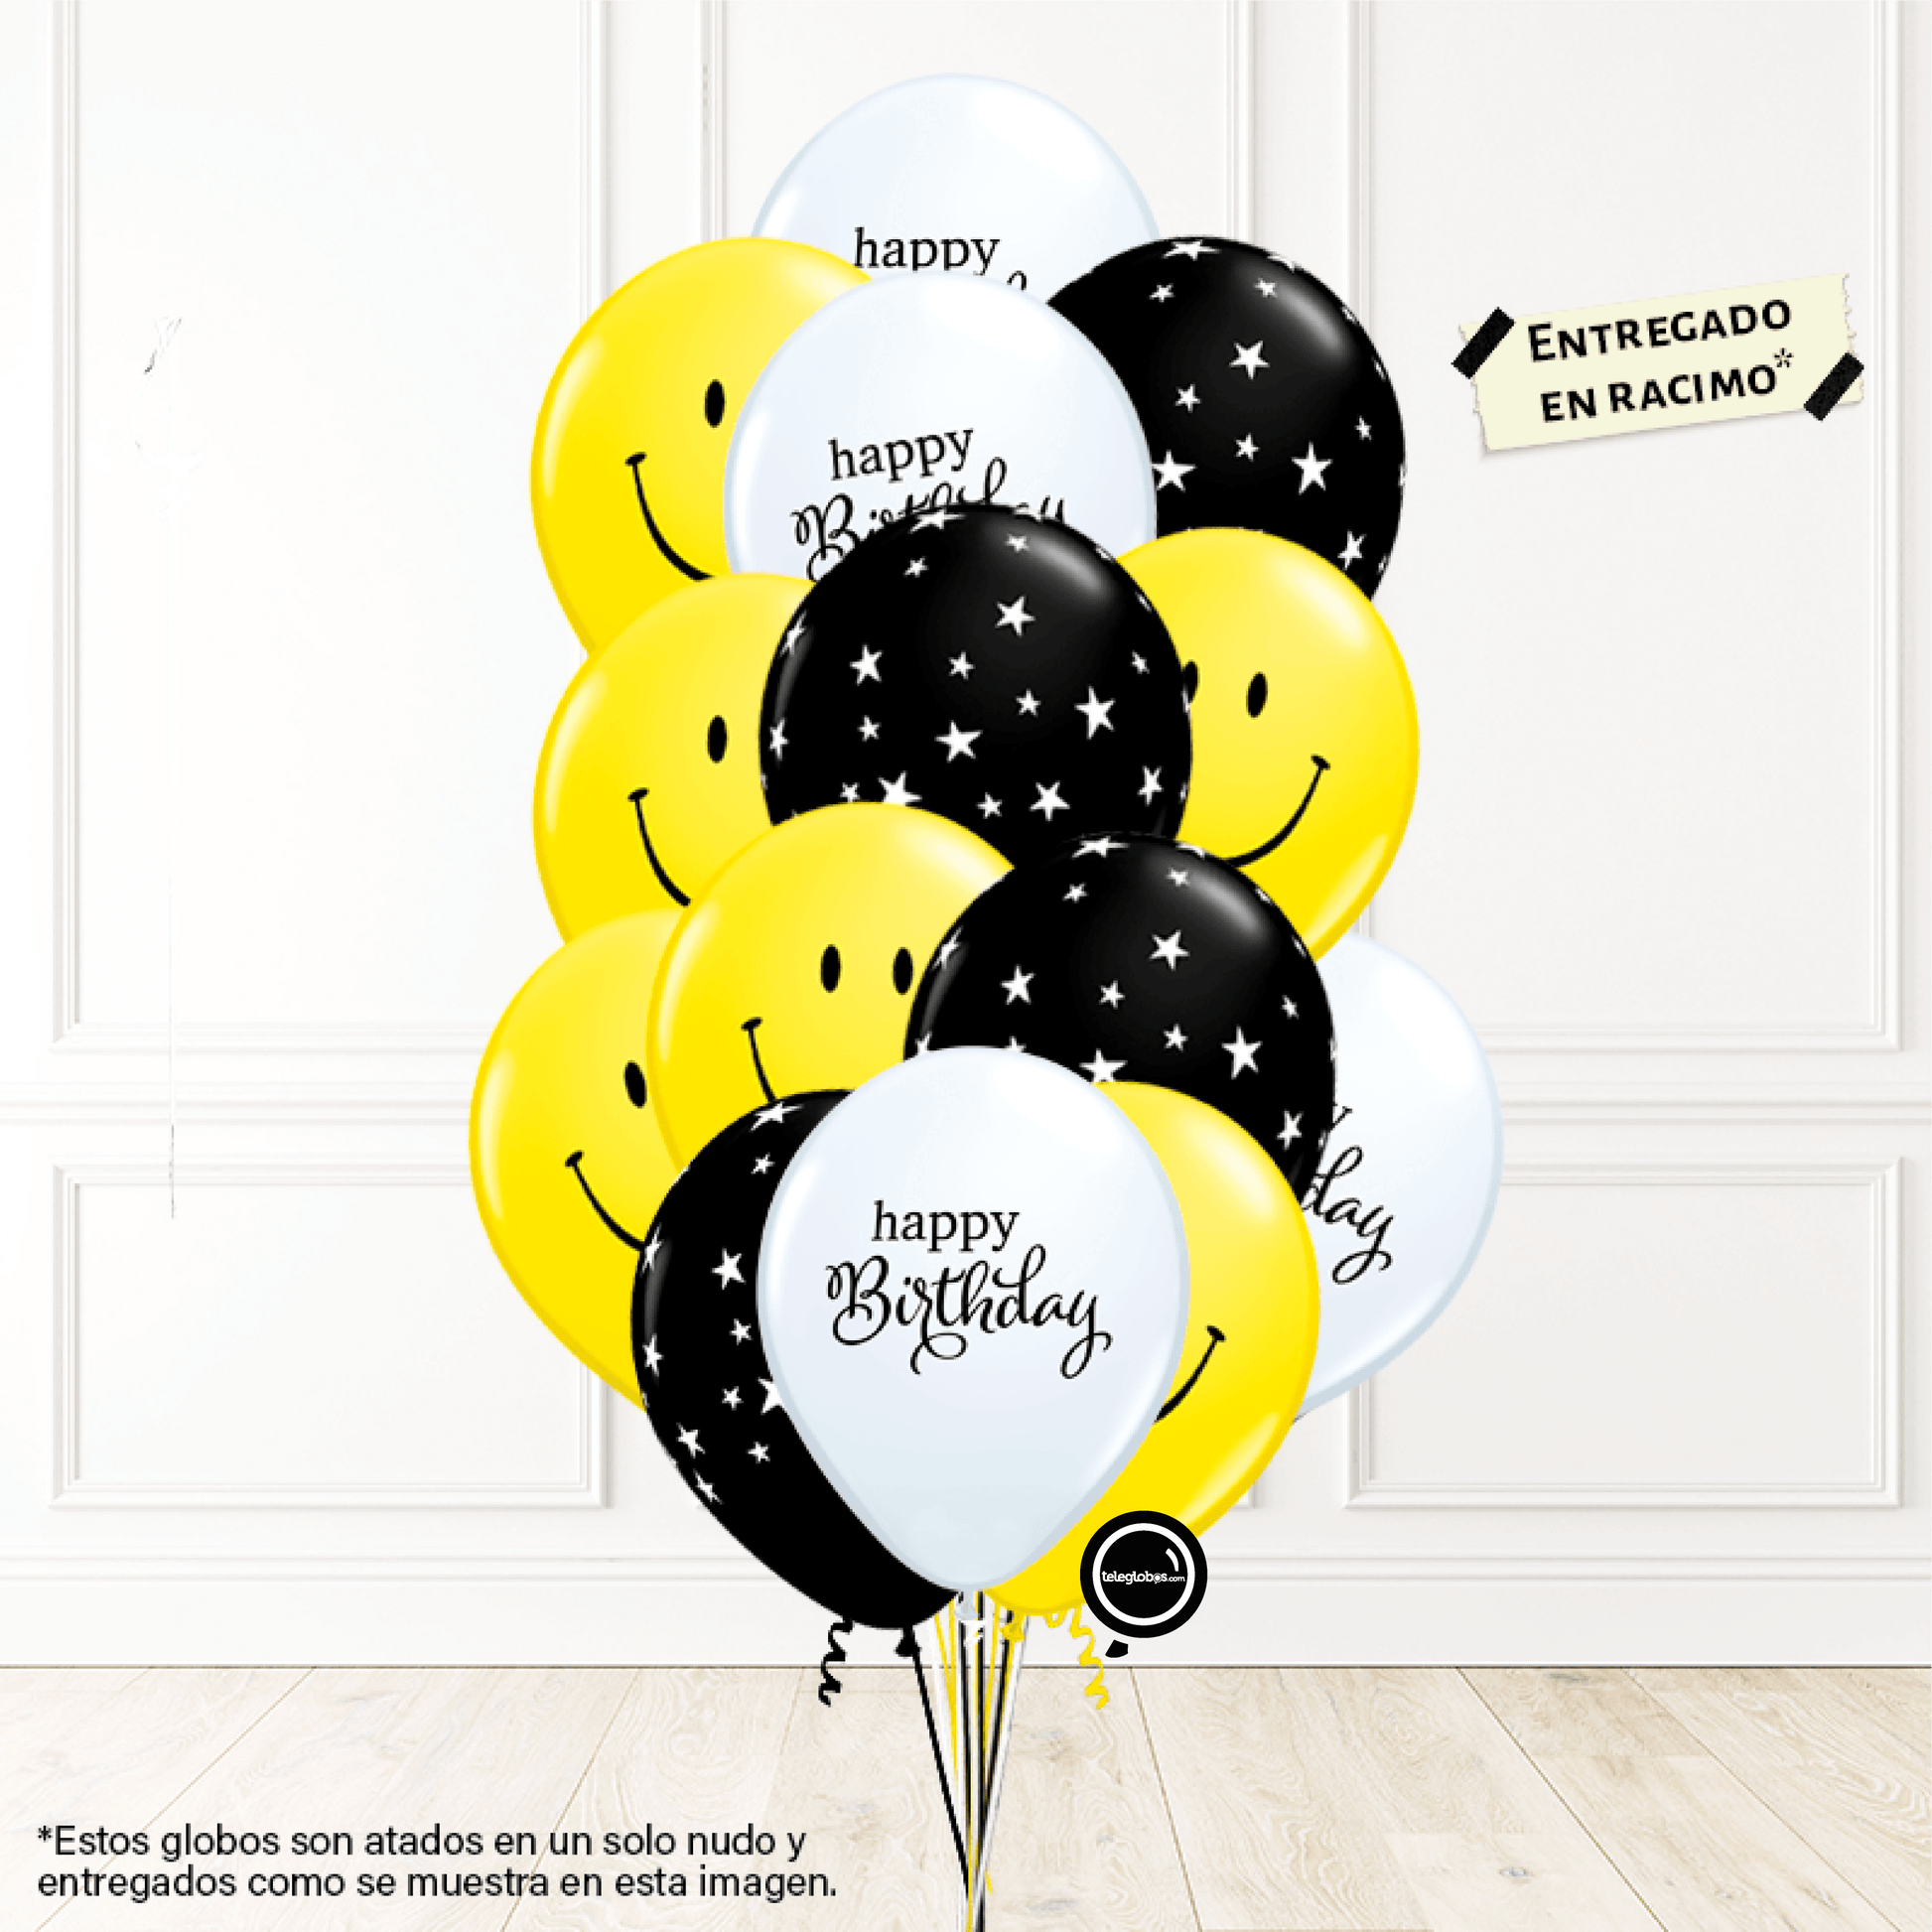 14 globos inflados con helio -Happy Birthday/Estrellas/Caritas Felices- Bio* -RAC022-.